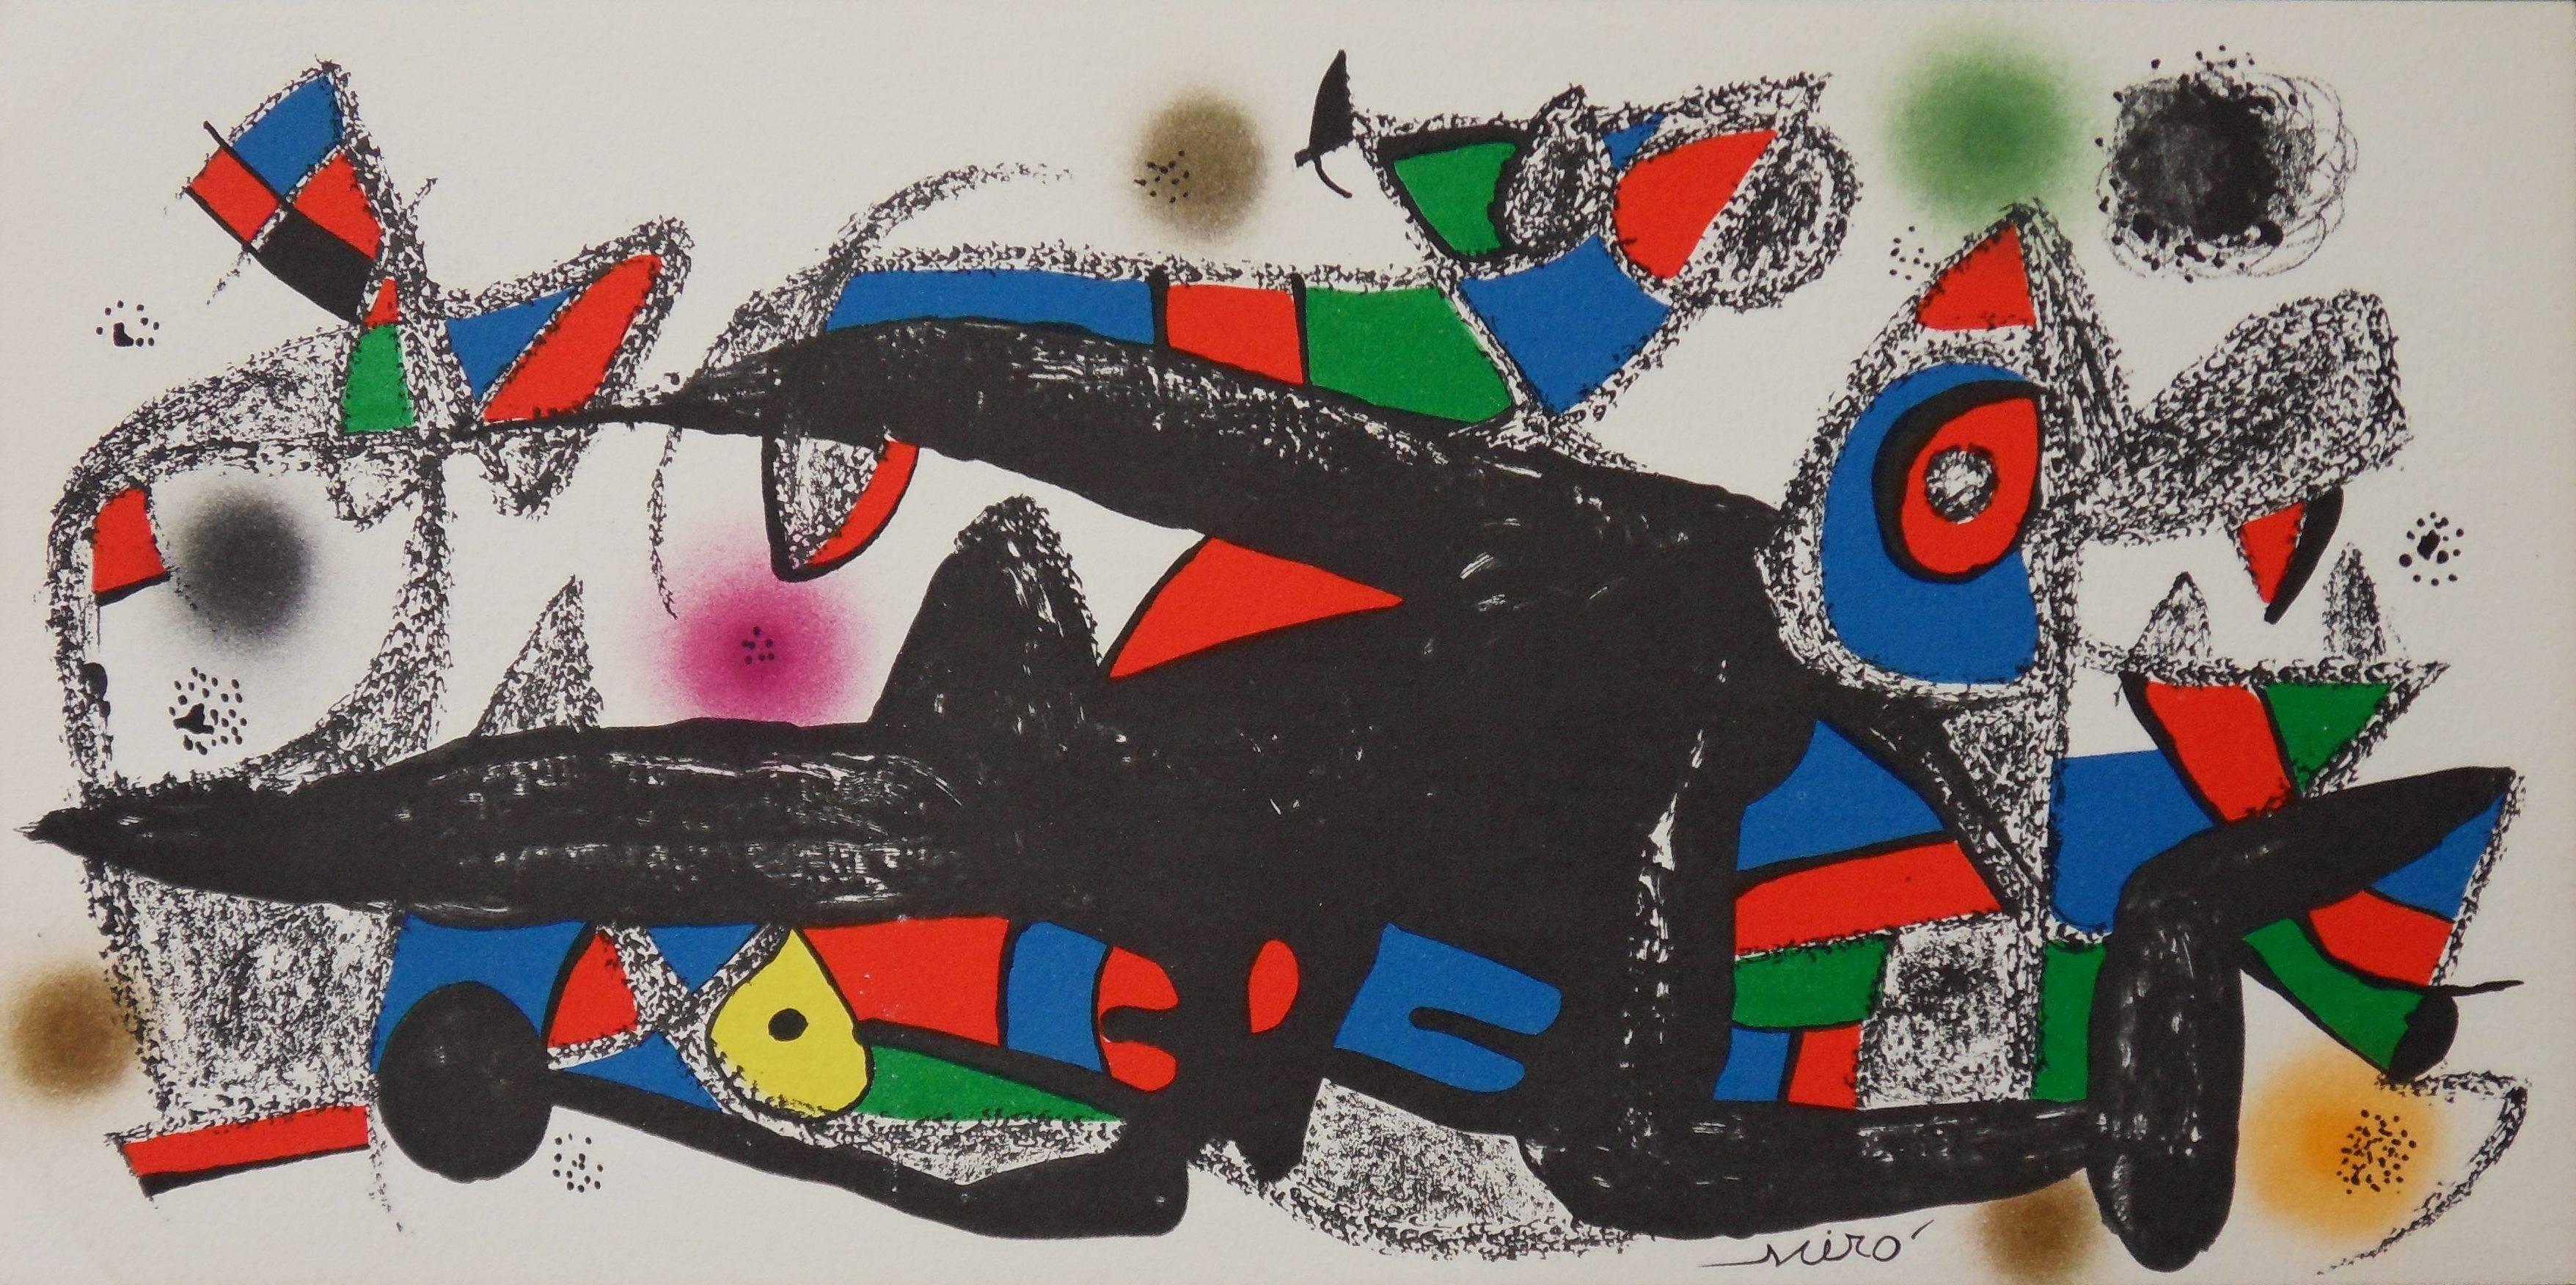 Joan Miró Abstract Print - Escultor : Denmark - Original lithograph - 1974